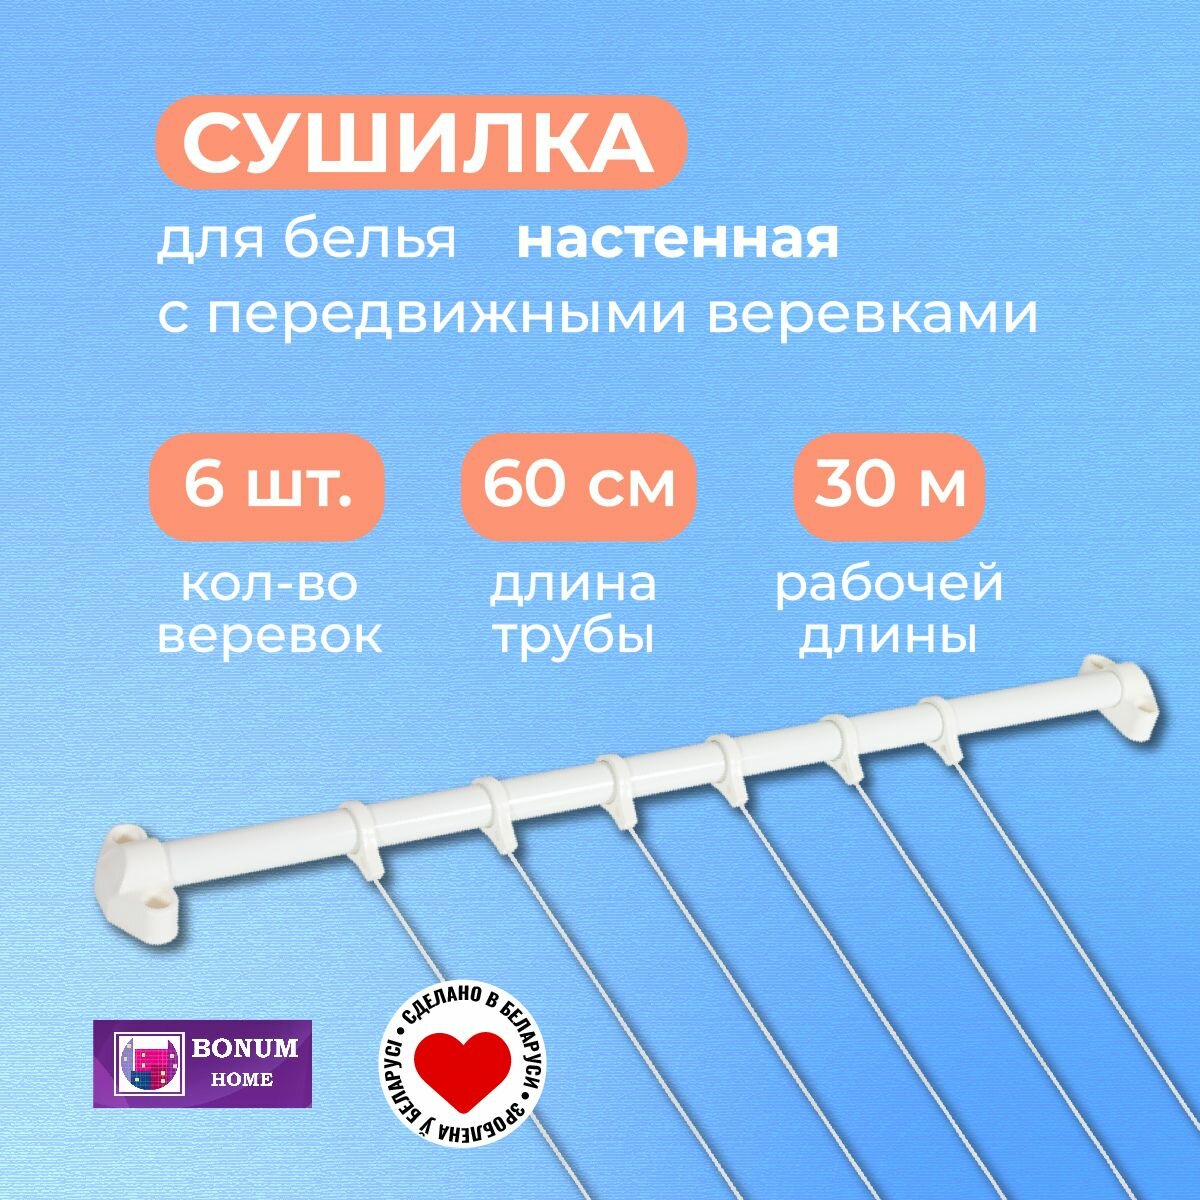 Сушилка для белья с 6-передвижными веревками, белая. Беларусь.